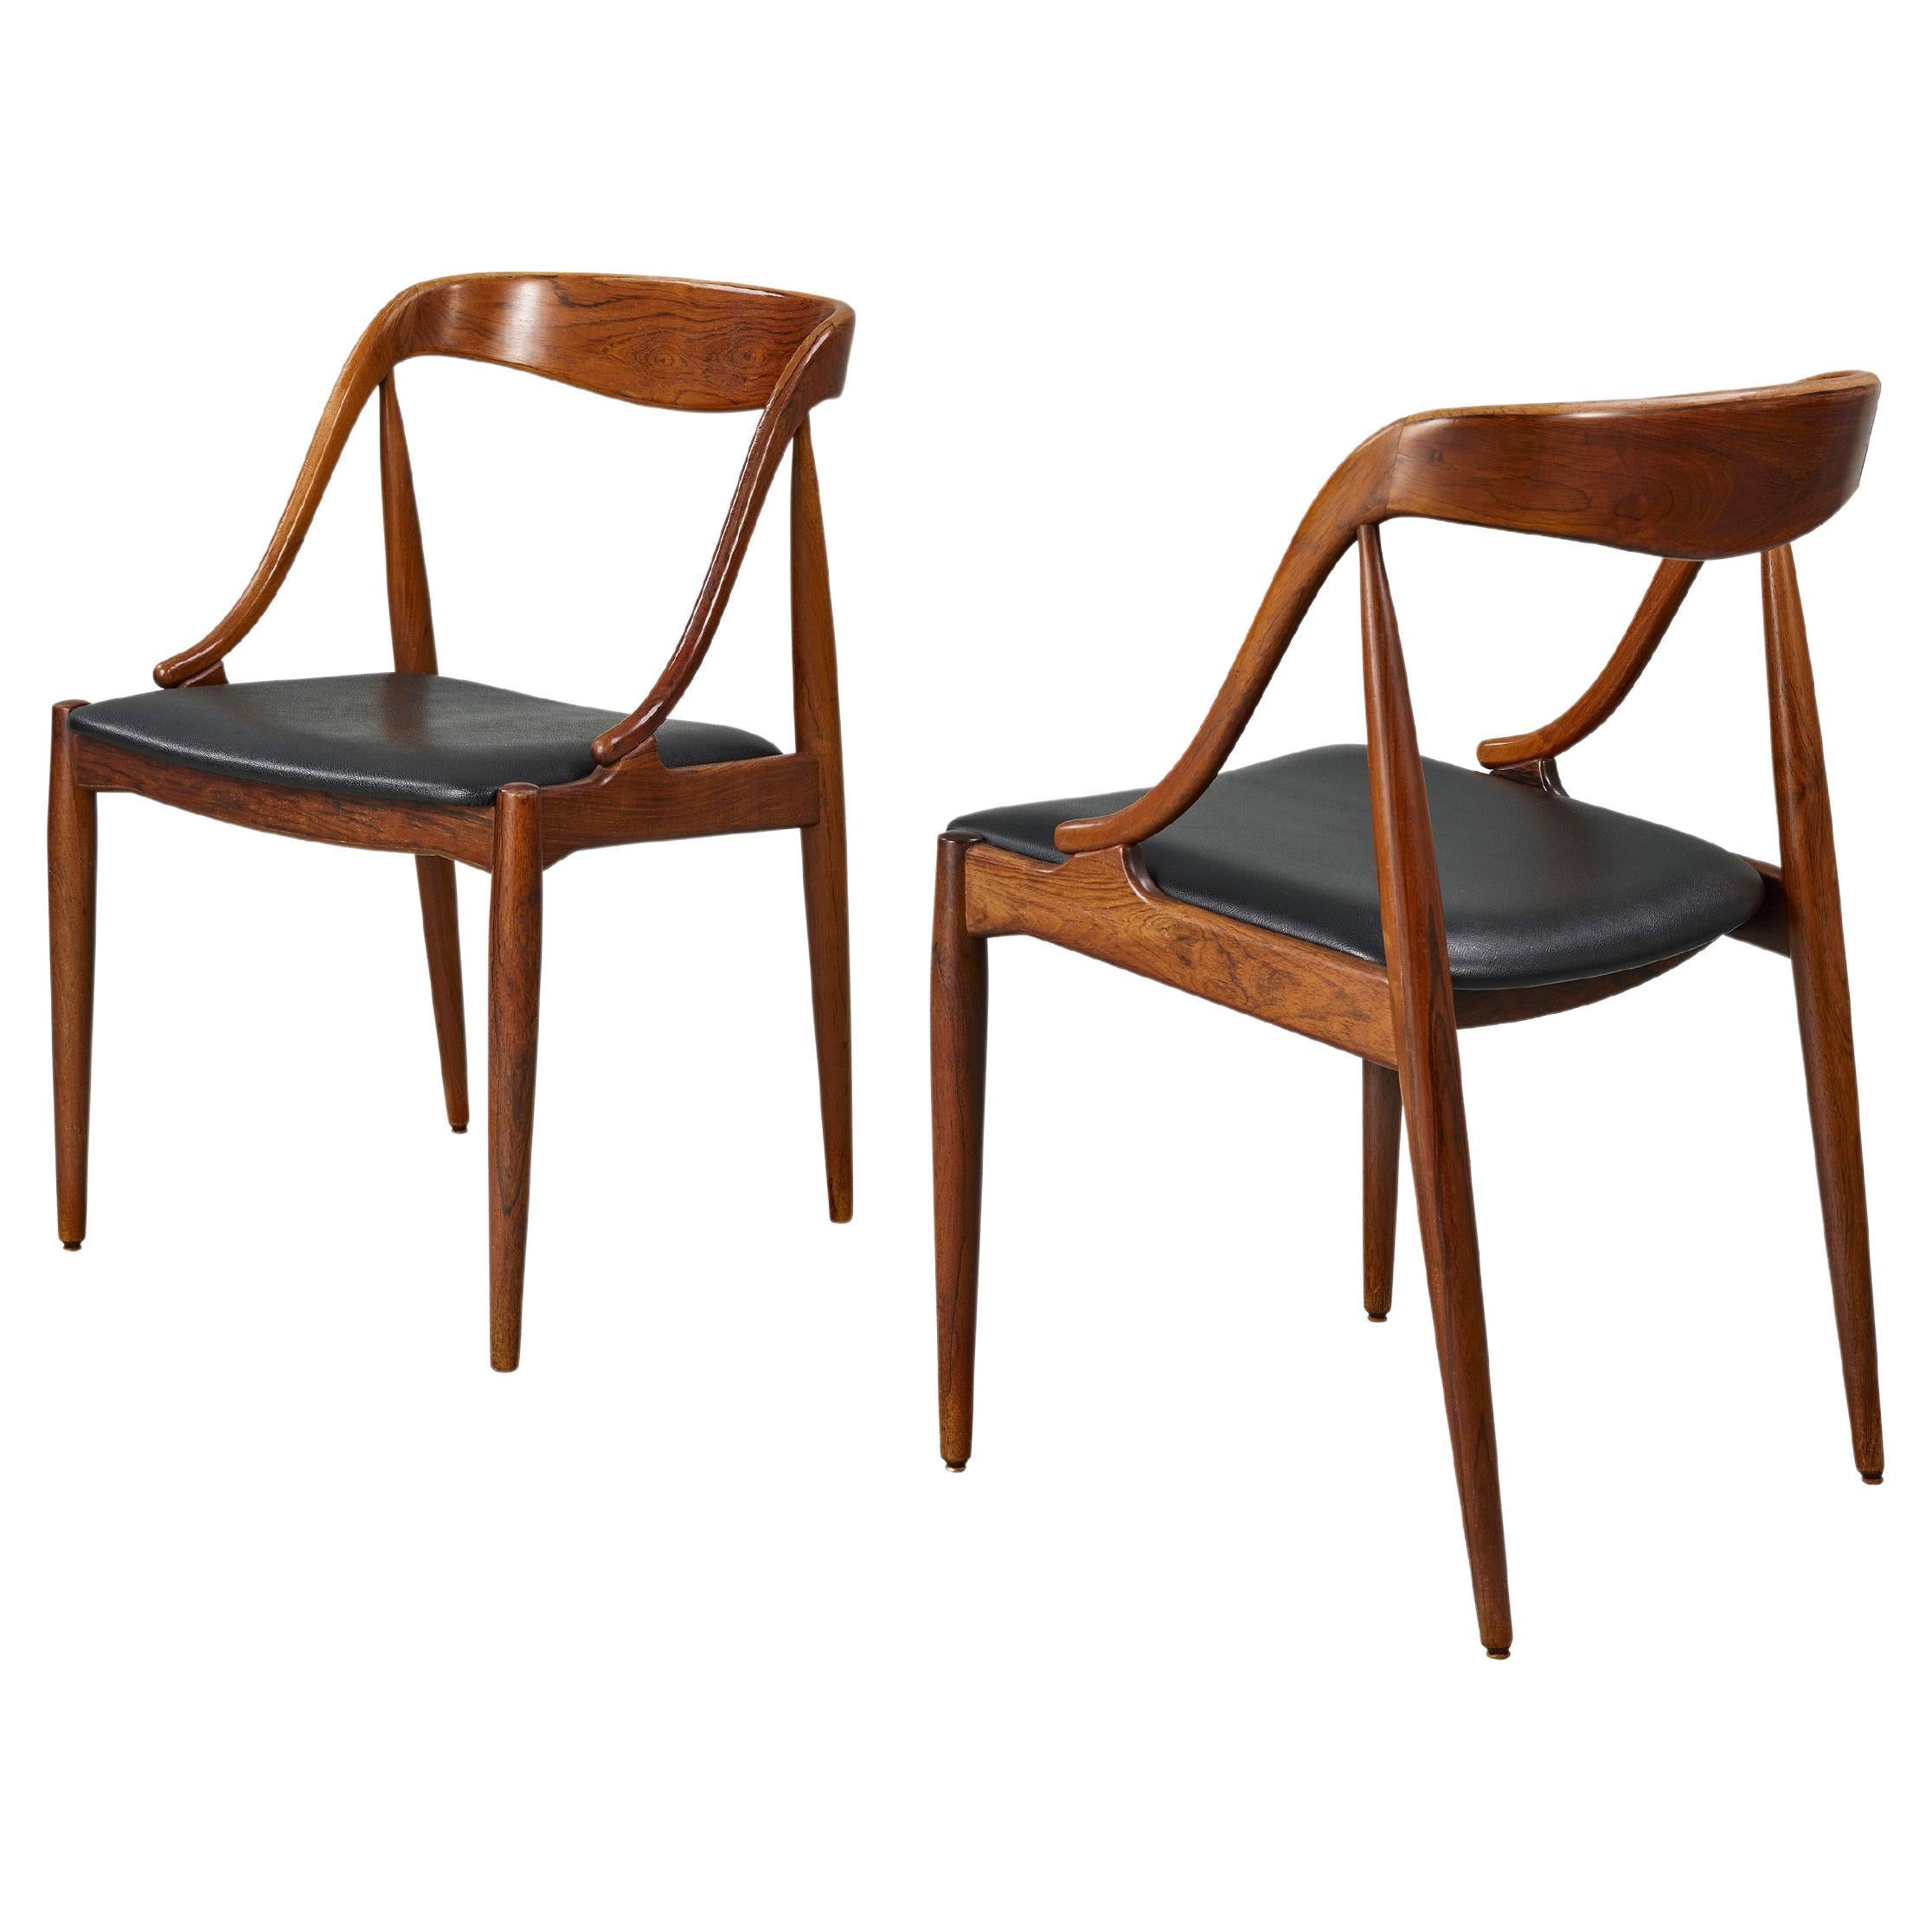 Ein Paar der von Johannes Andersen für die Uldum Møbelfabrik in Dänemark entworfenen geschwungenen Esszimmerstühle, diese Klassiker der skandinavischen Moderne, sind aus massivem Teakholz geschnitzt. Sie symbolisieren das dänische Mid-Century Modern